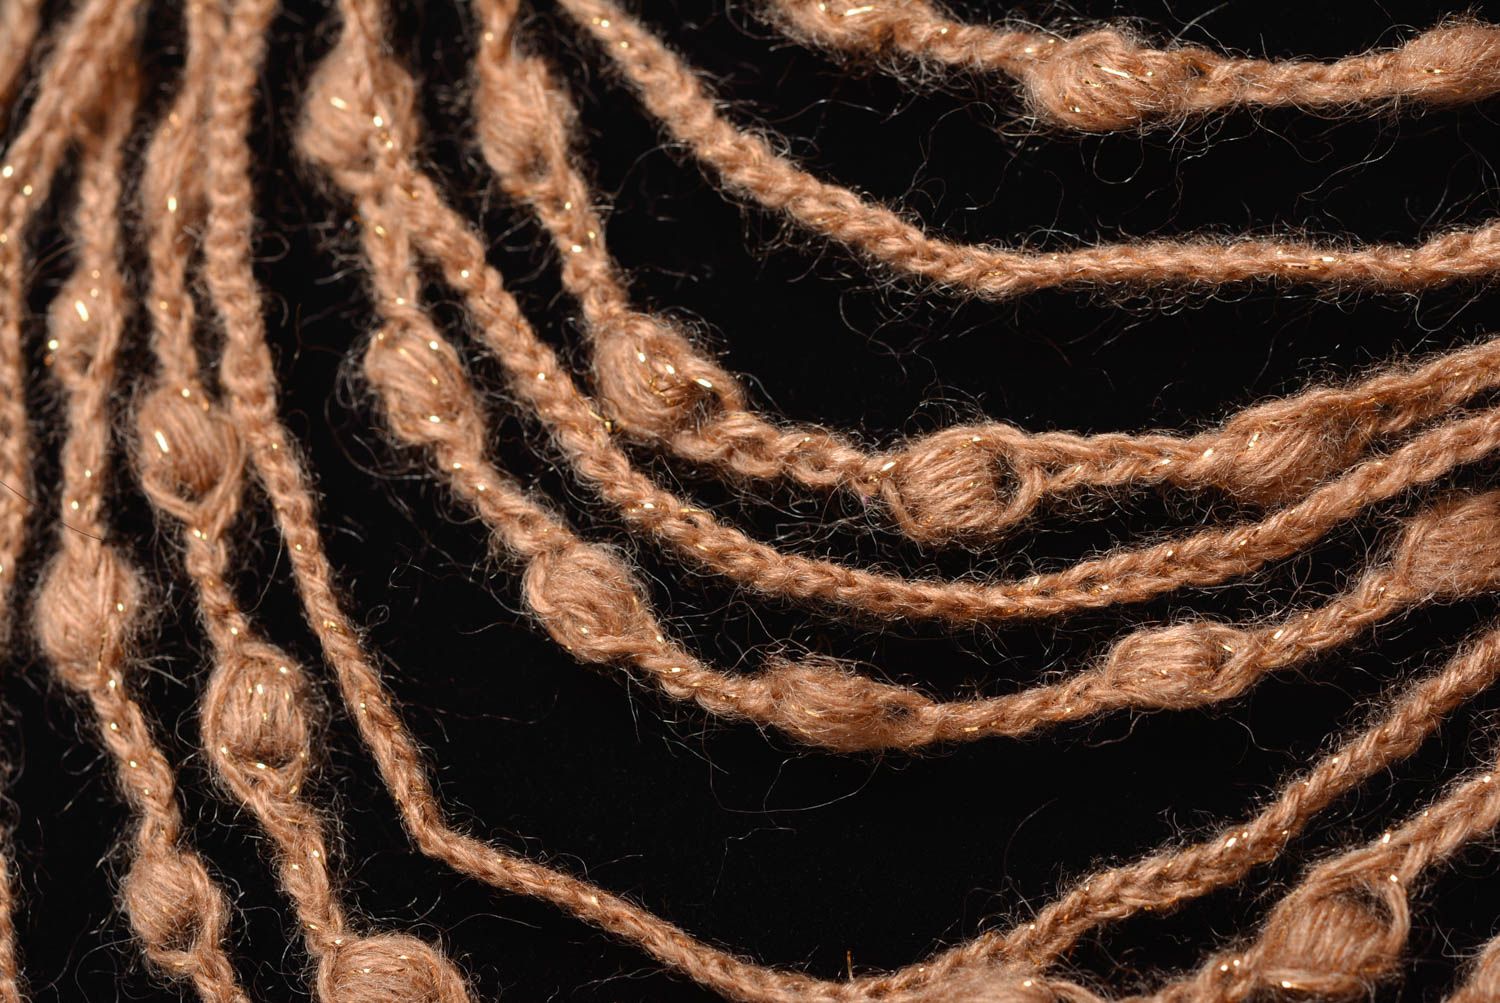 Вязаные бусы ручной работы крючком из полушерсти светлые коричневые многорядные фото 3